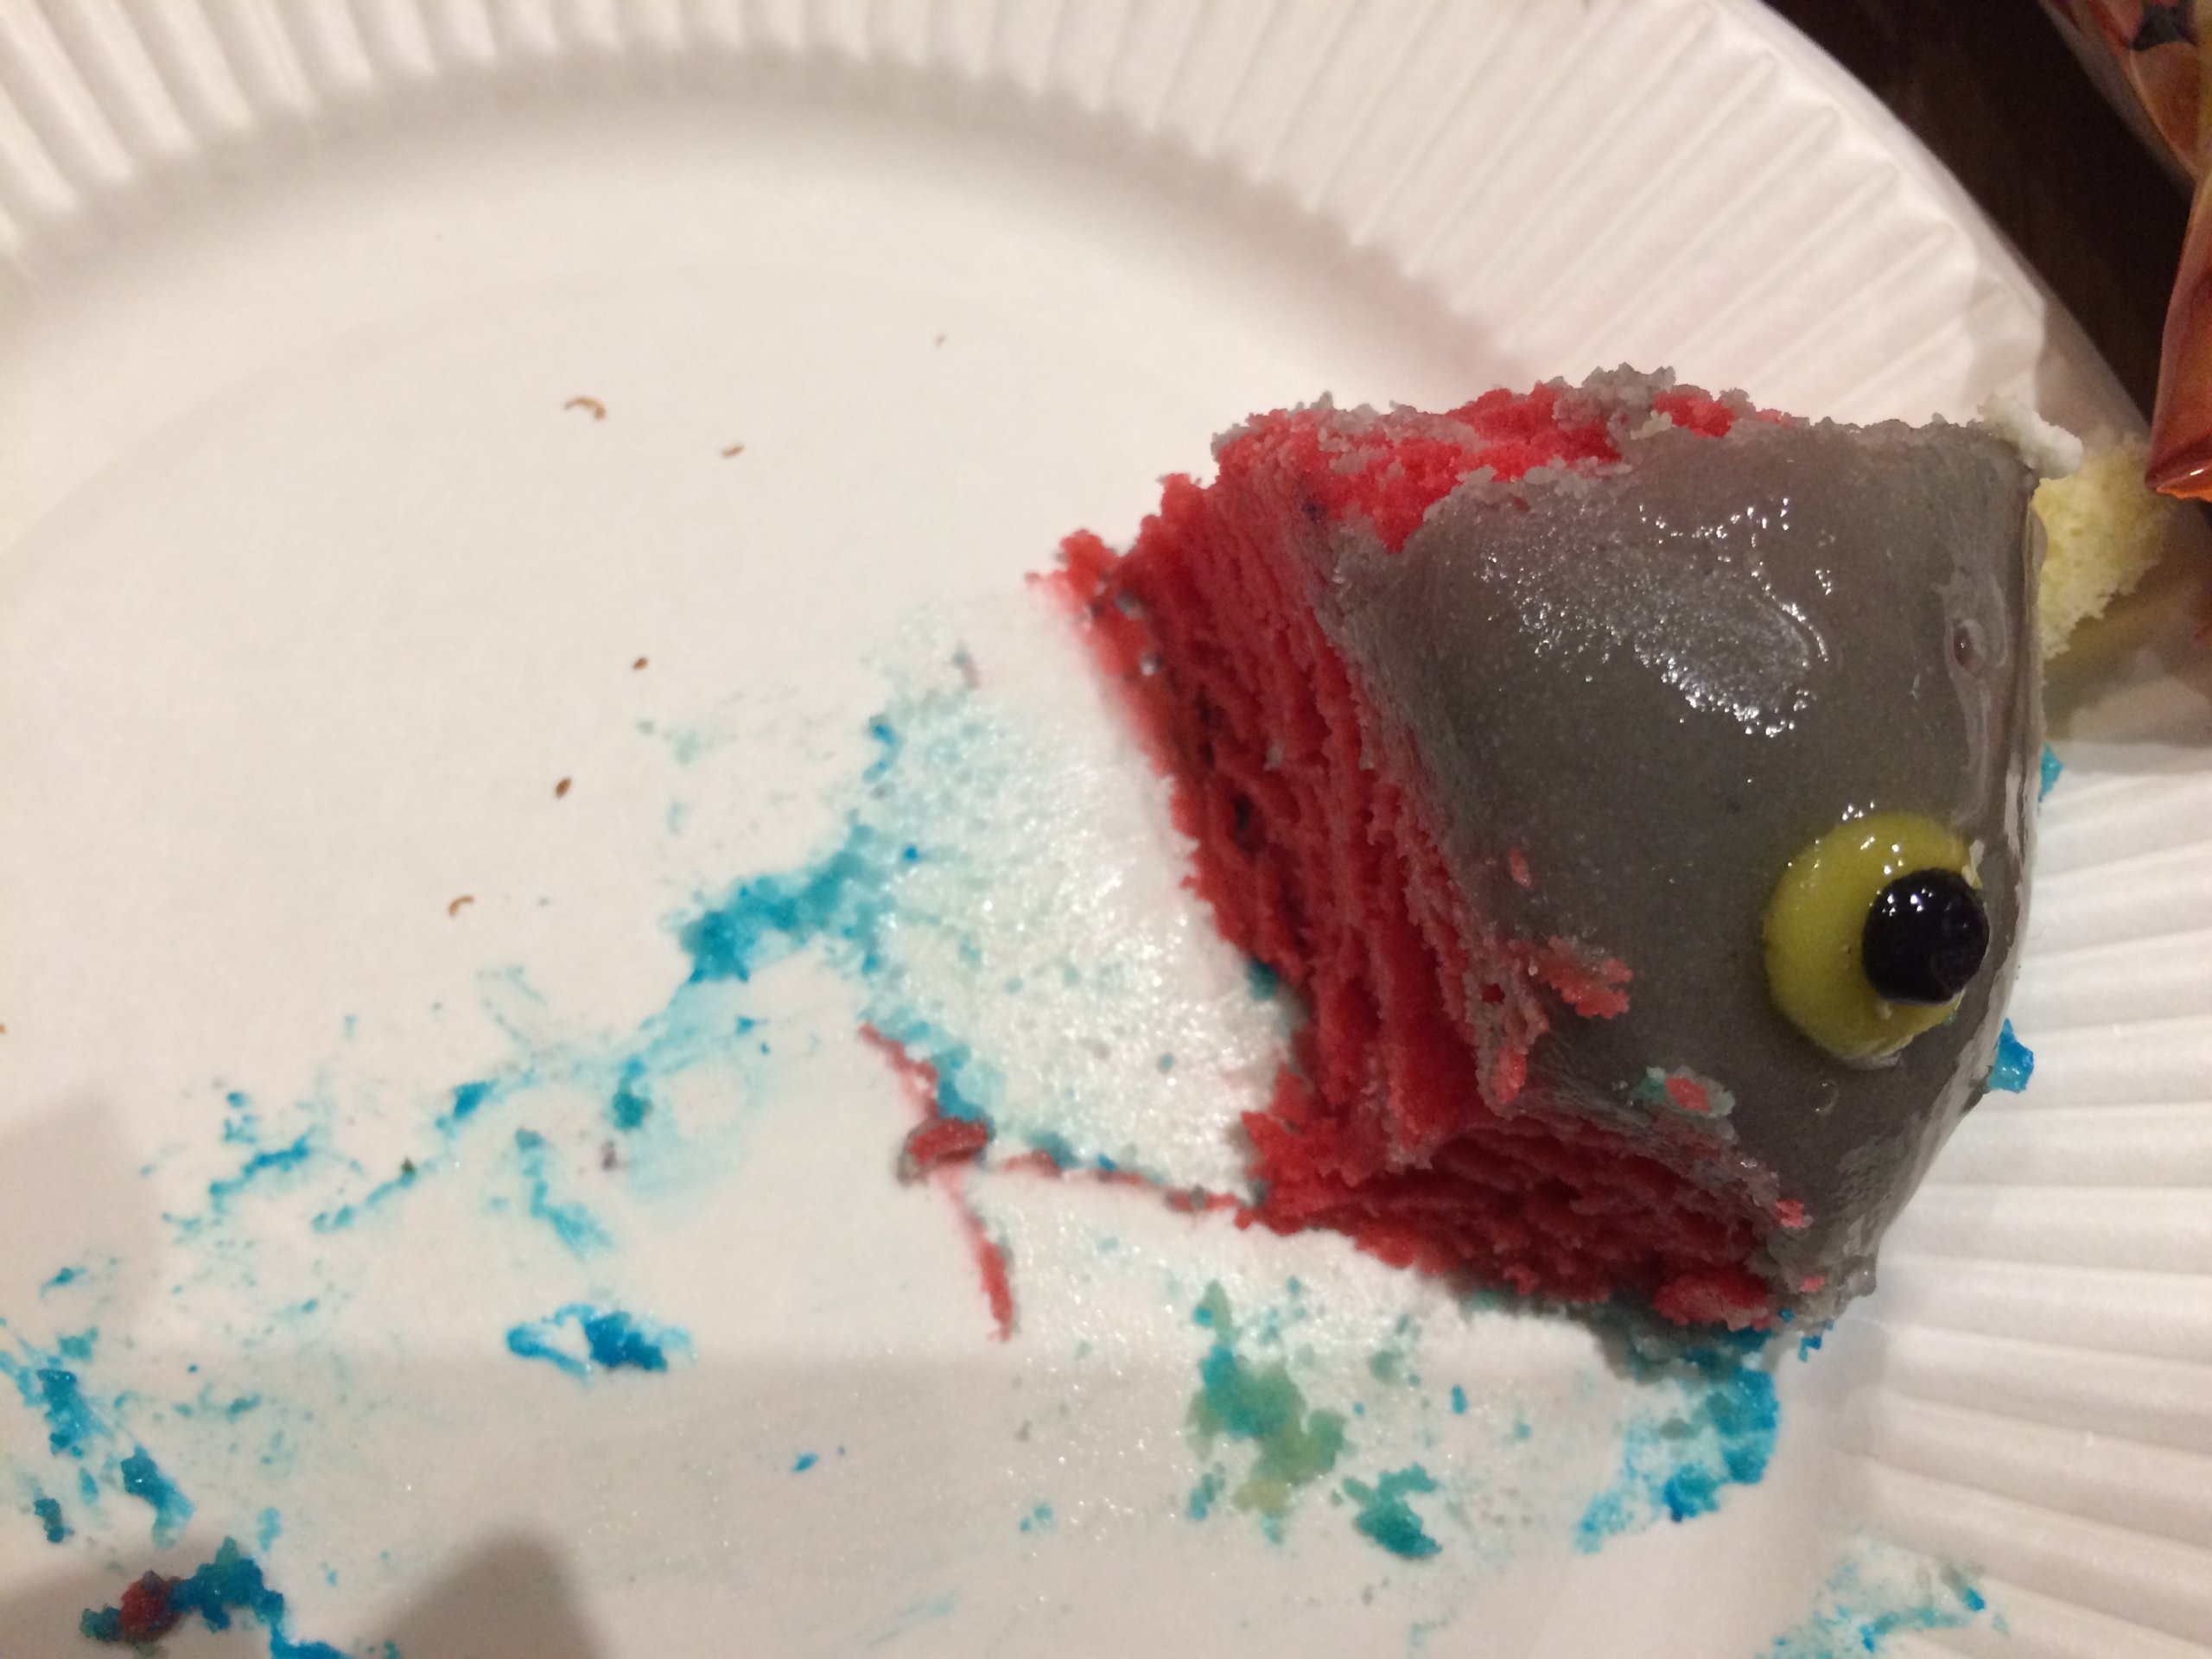 Ff14 座談会で ナマズオケーキ を食べてみた 驚きのキモさと甘さのケーキをレポート ねこくまぶろぐ